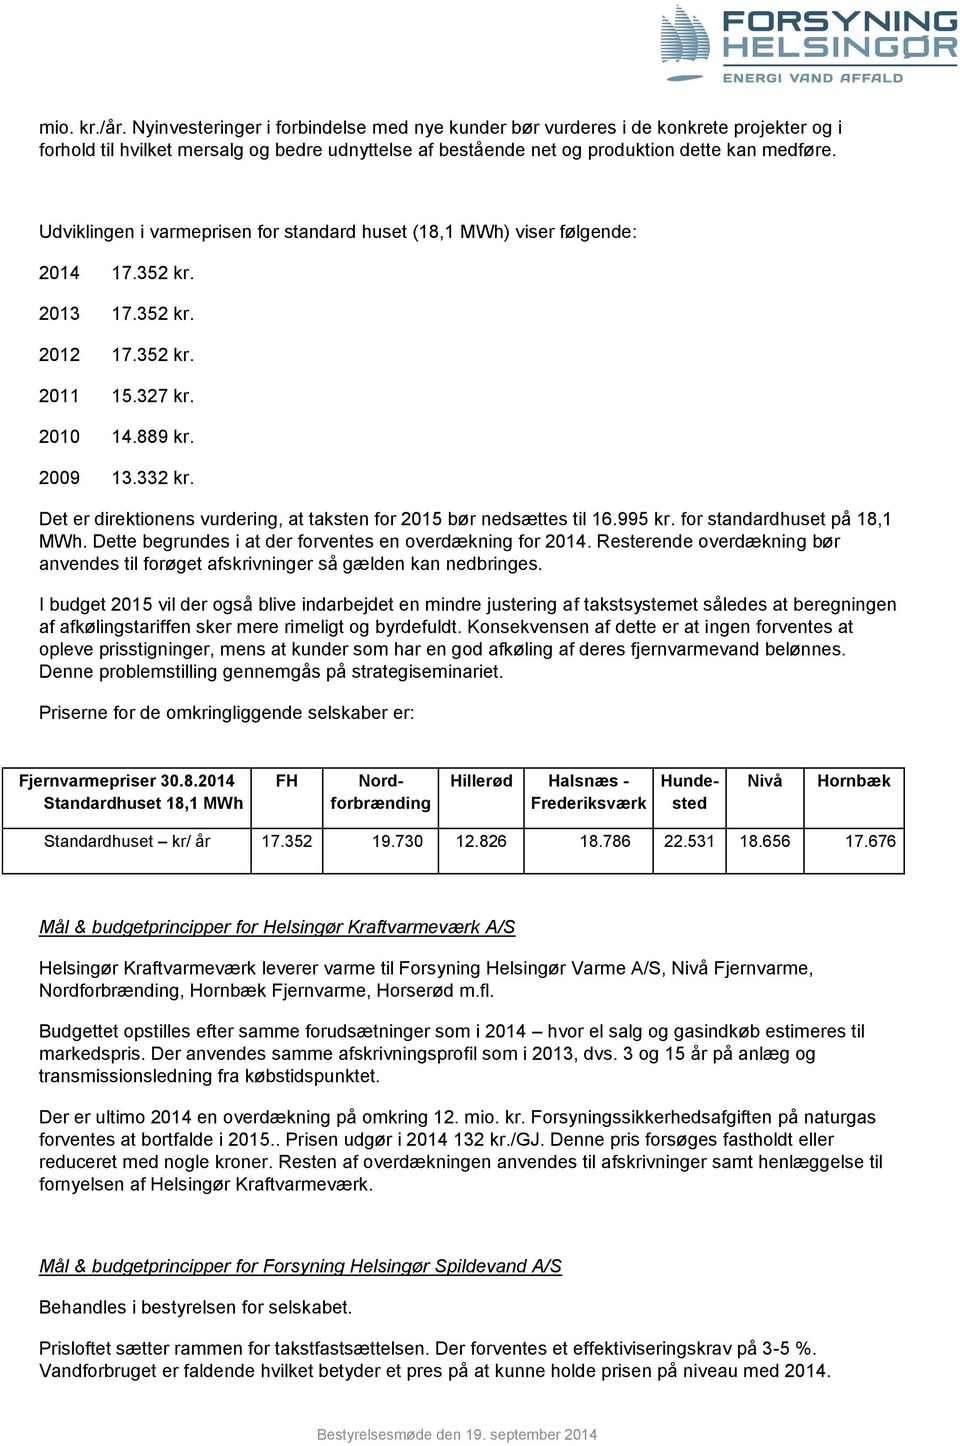 Det er direktionens vurdering, at taksten for 2015 bør nedsættes til 16.995 kr. for standardhuset på 18,1 MWh. Dette begrundes i at der forventes en overdækning for 2014.